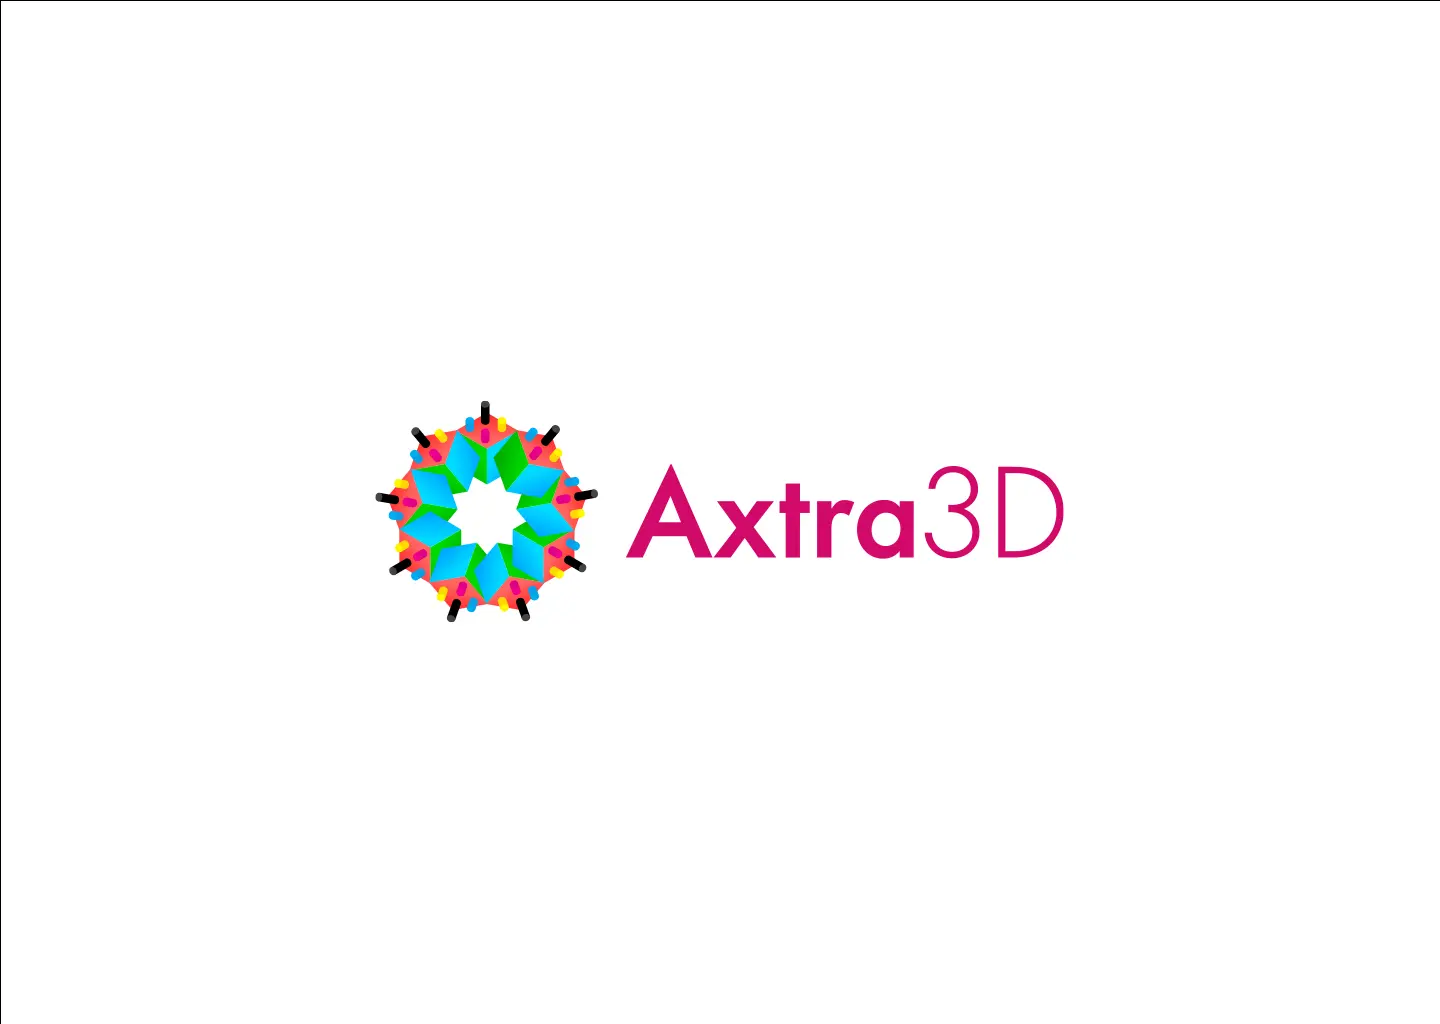 pixdez-logo-3D-2